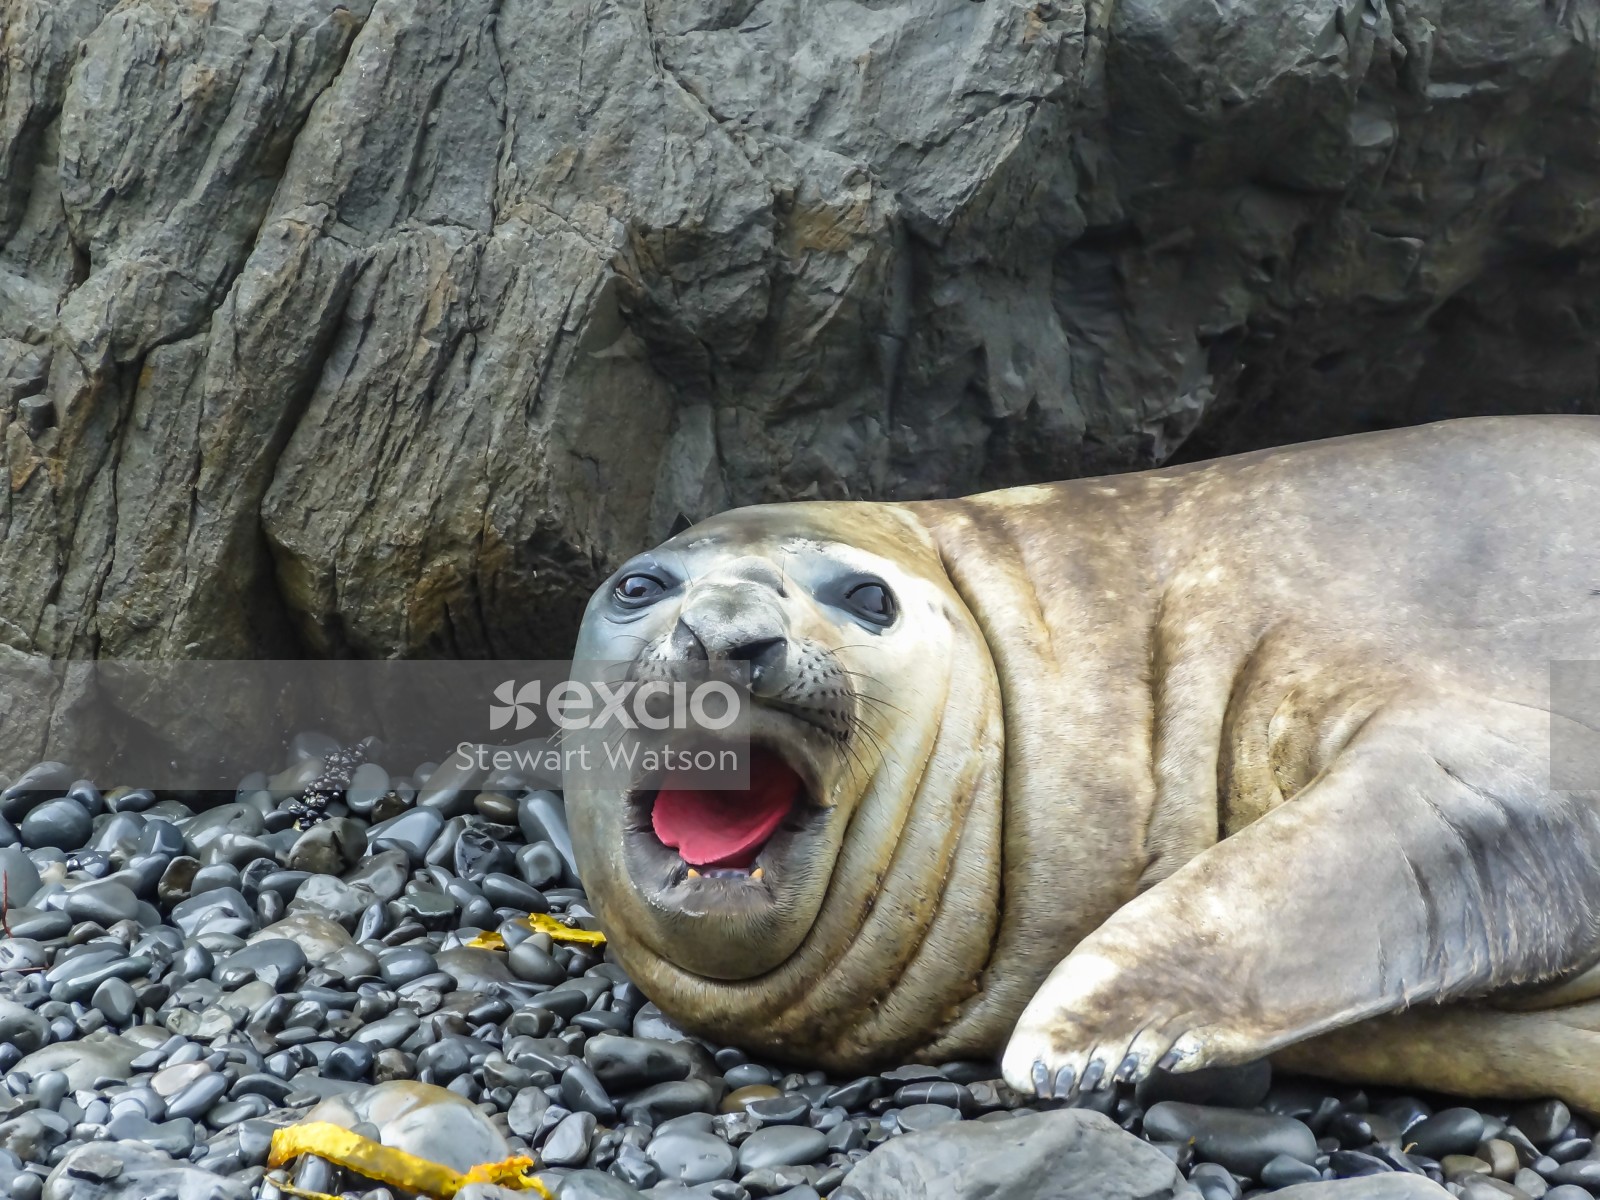 Angry sea lion